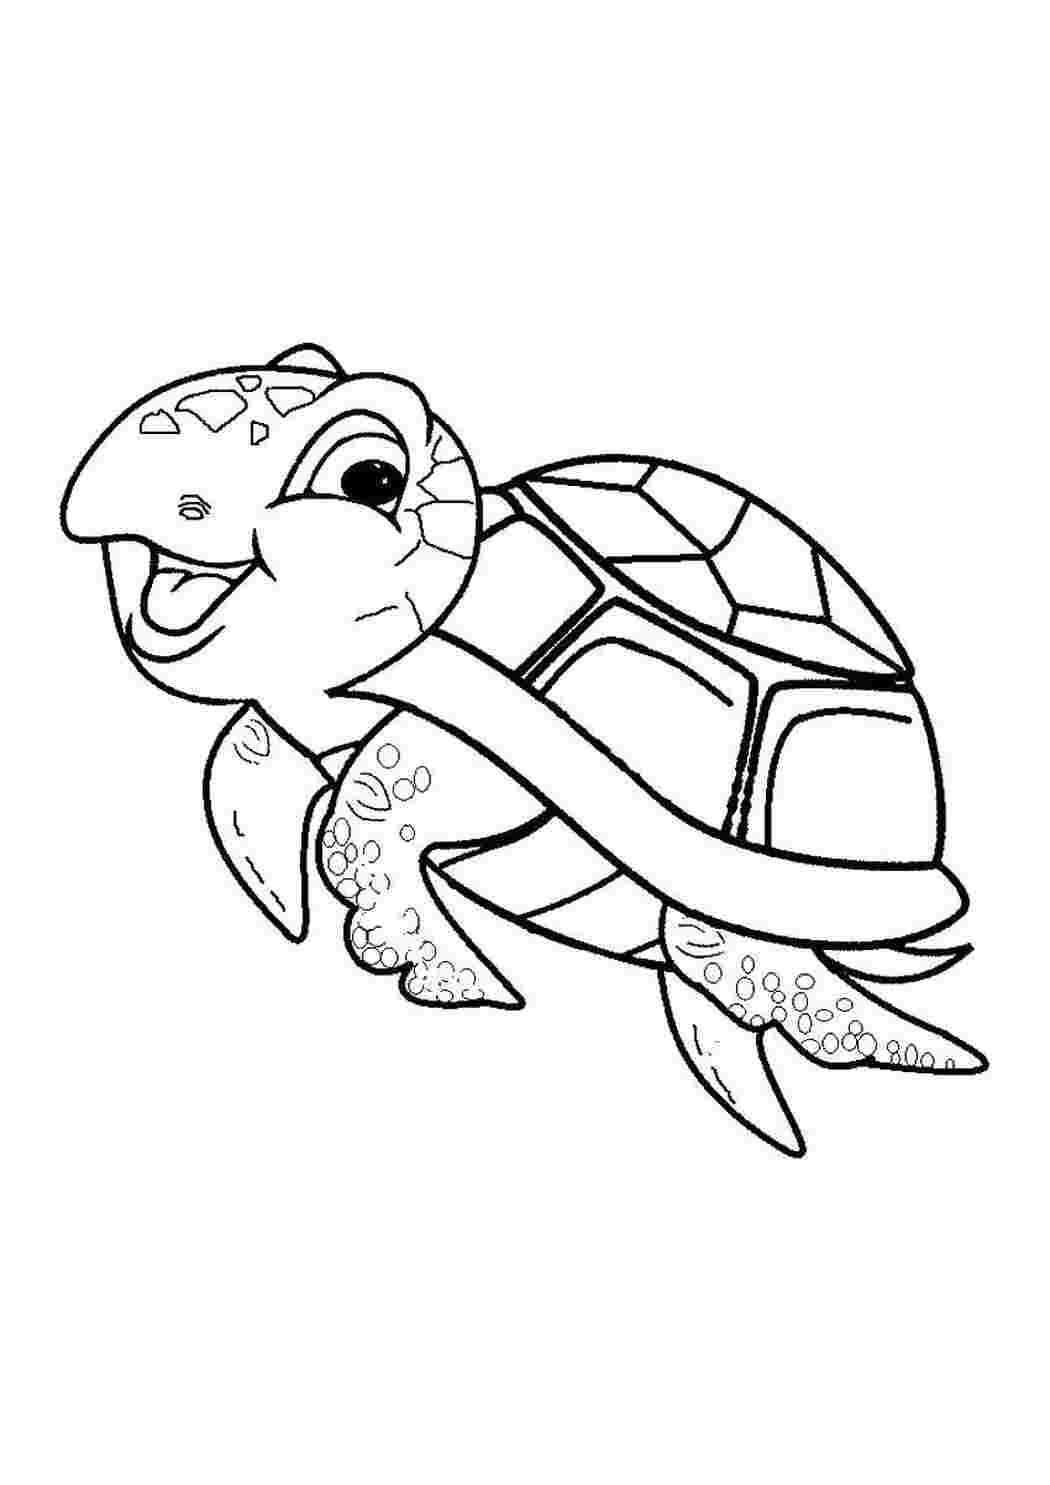 Раскраски Морская черепашка еще очень мала Морская черепаха Рептилия, черепаха